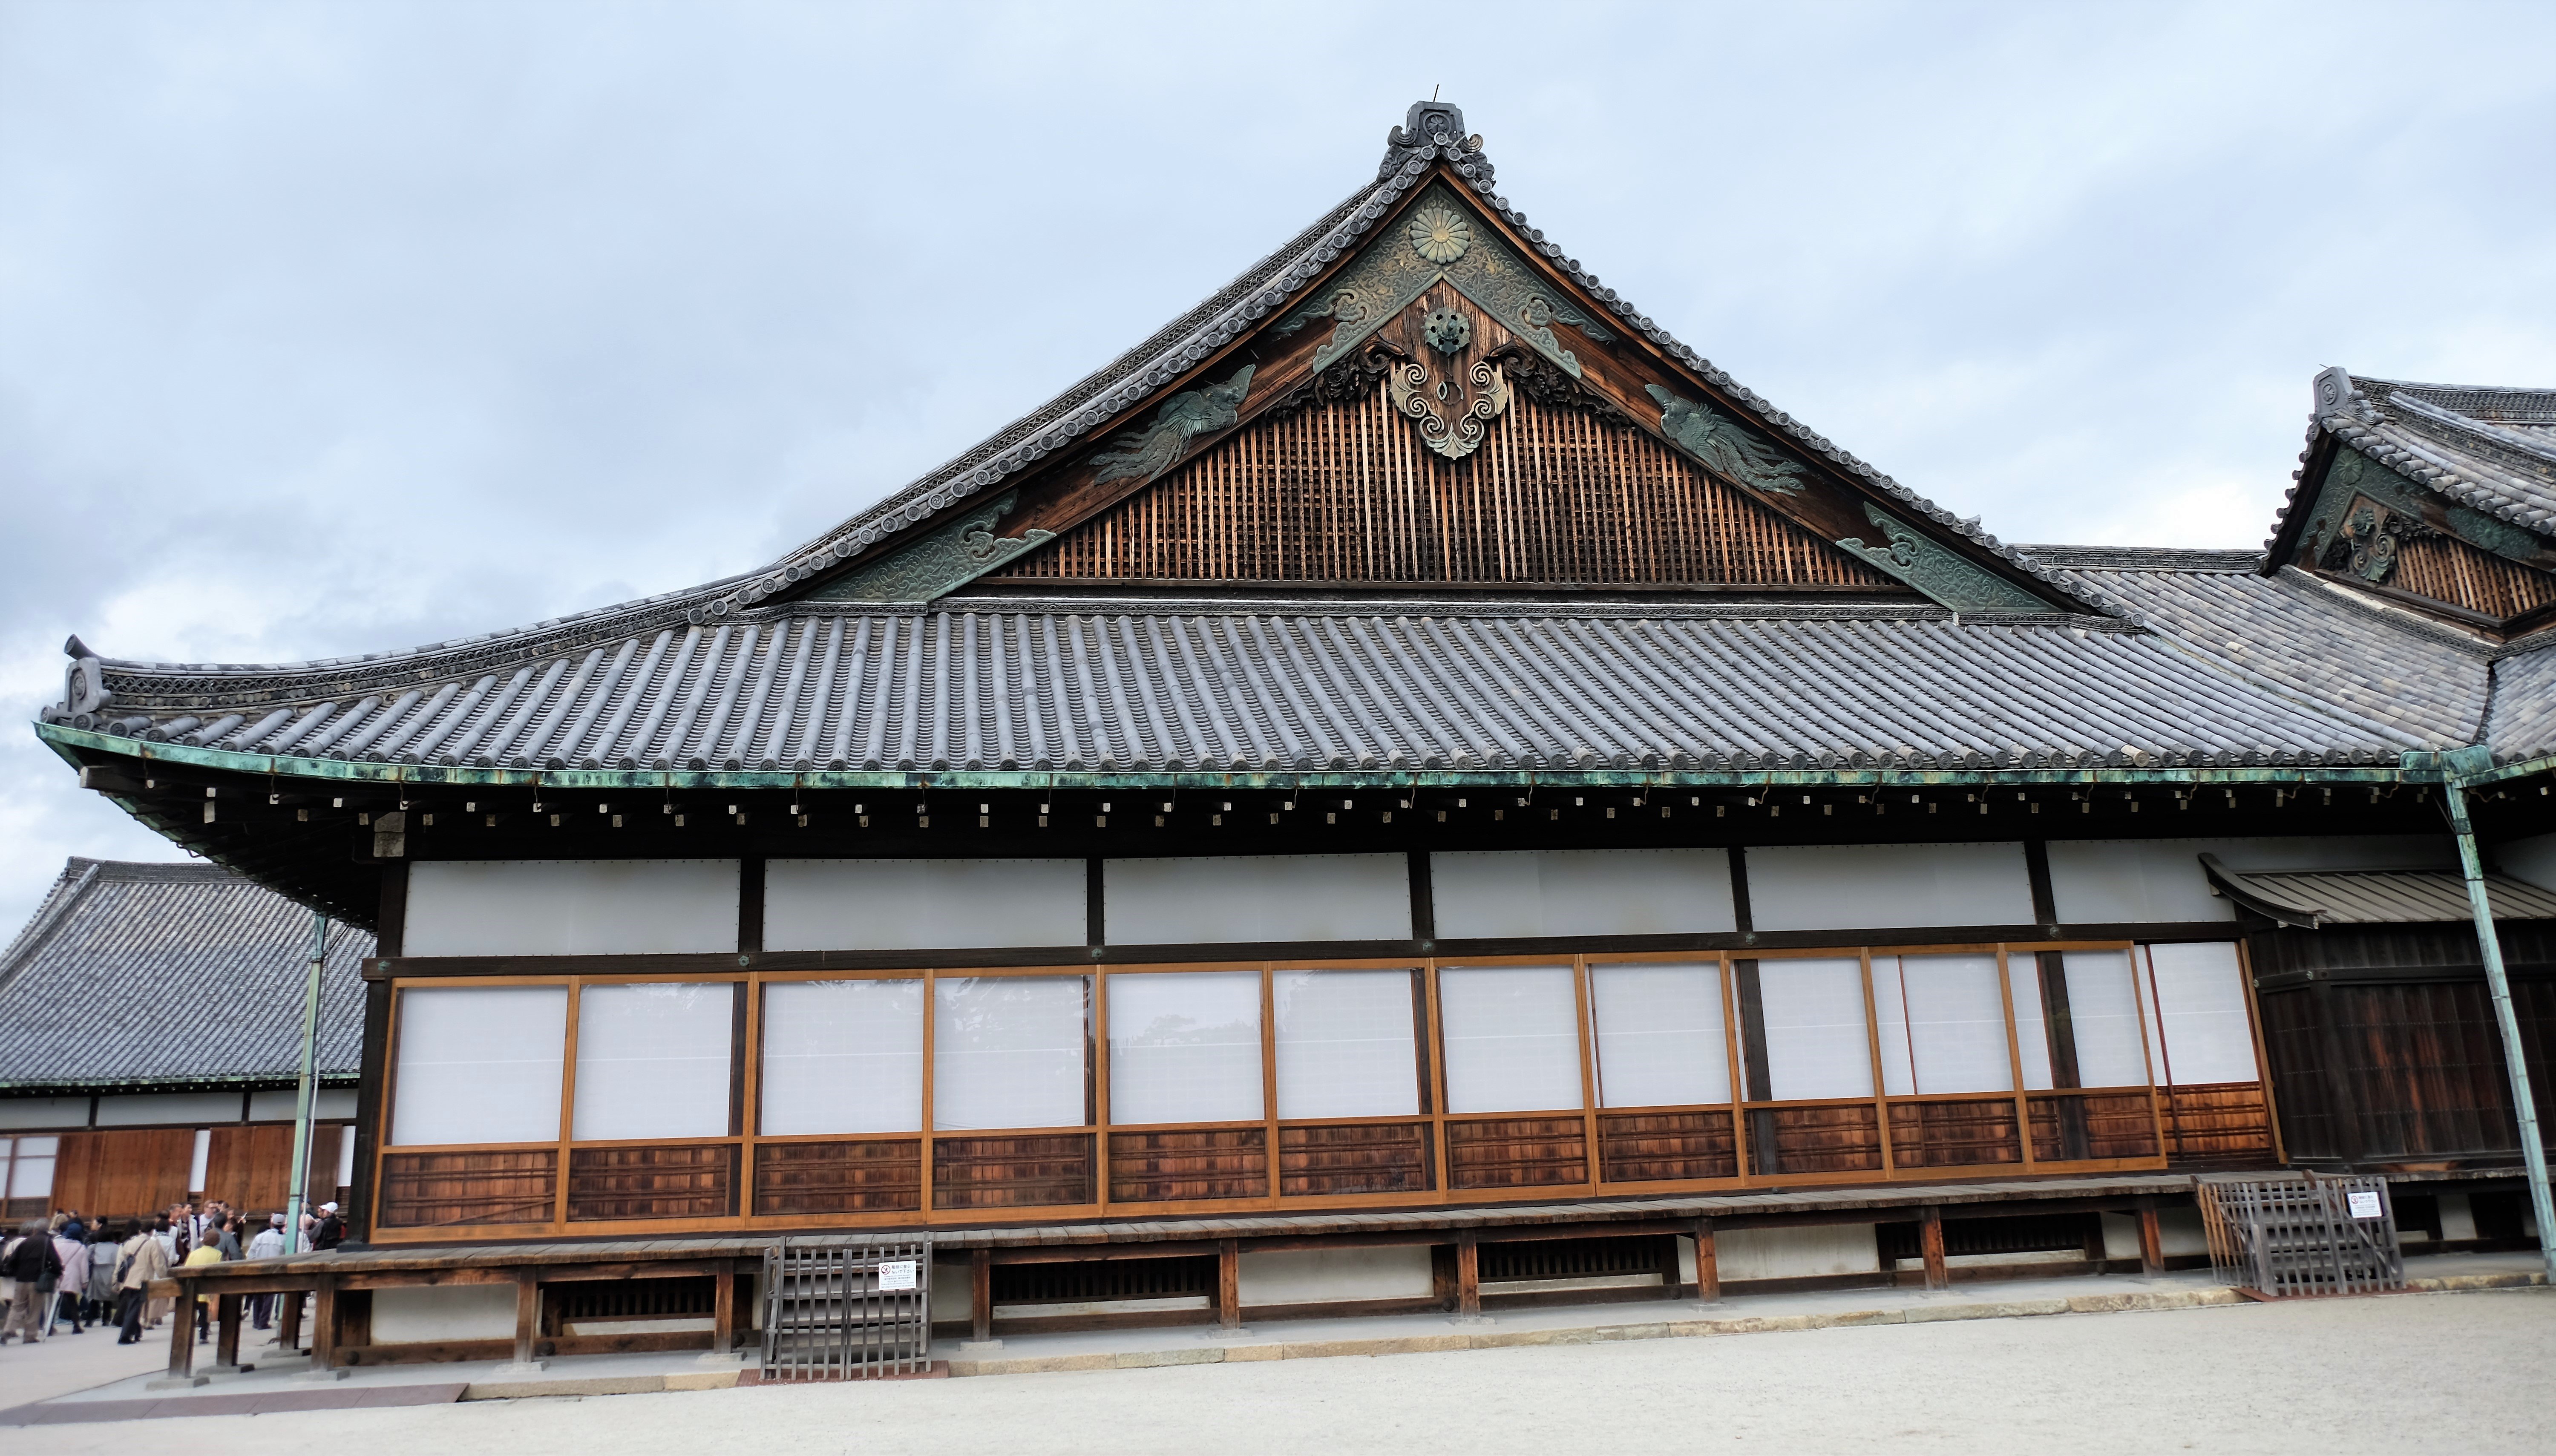 Ninomaru Palace